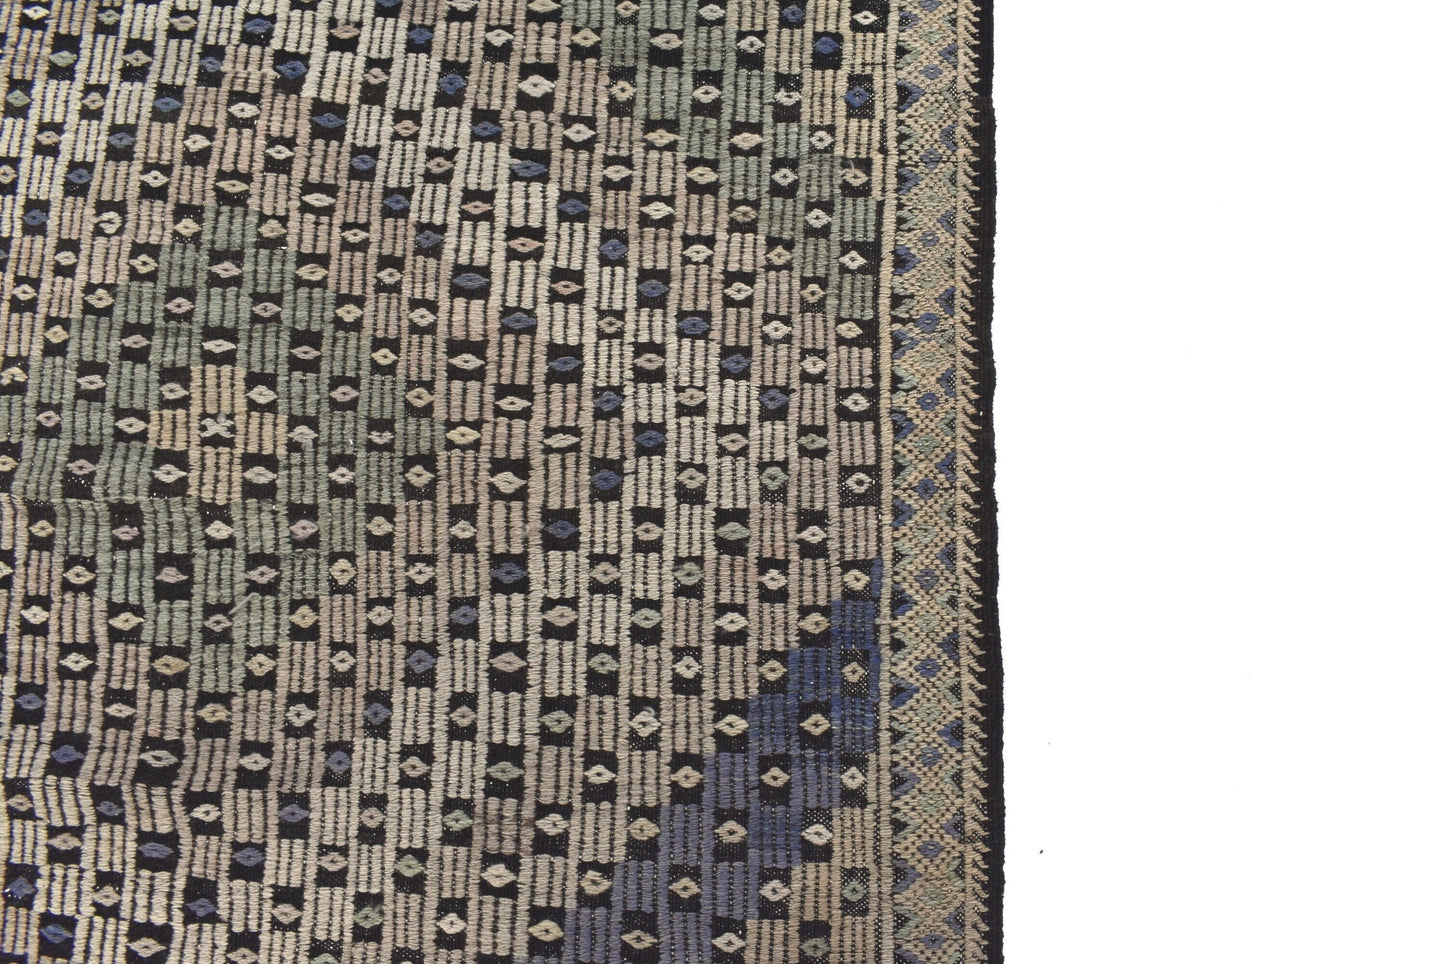 Kilim Rug 6x12, Turkish Kilim Rug, Vintage Kilim Rug, Area Kilim Rug, Bedroom Rug, Handmade Faded Kilim Rug, Rug Kilim, Anatolia Rug, 3241